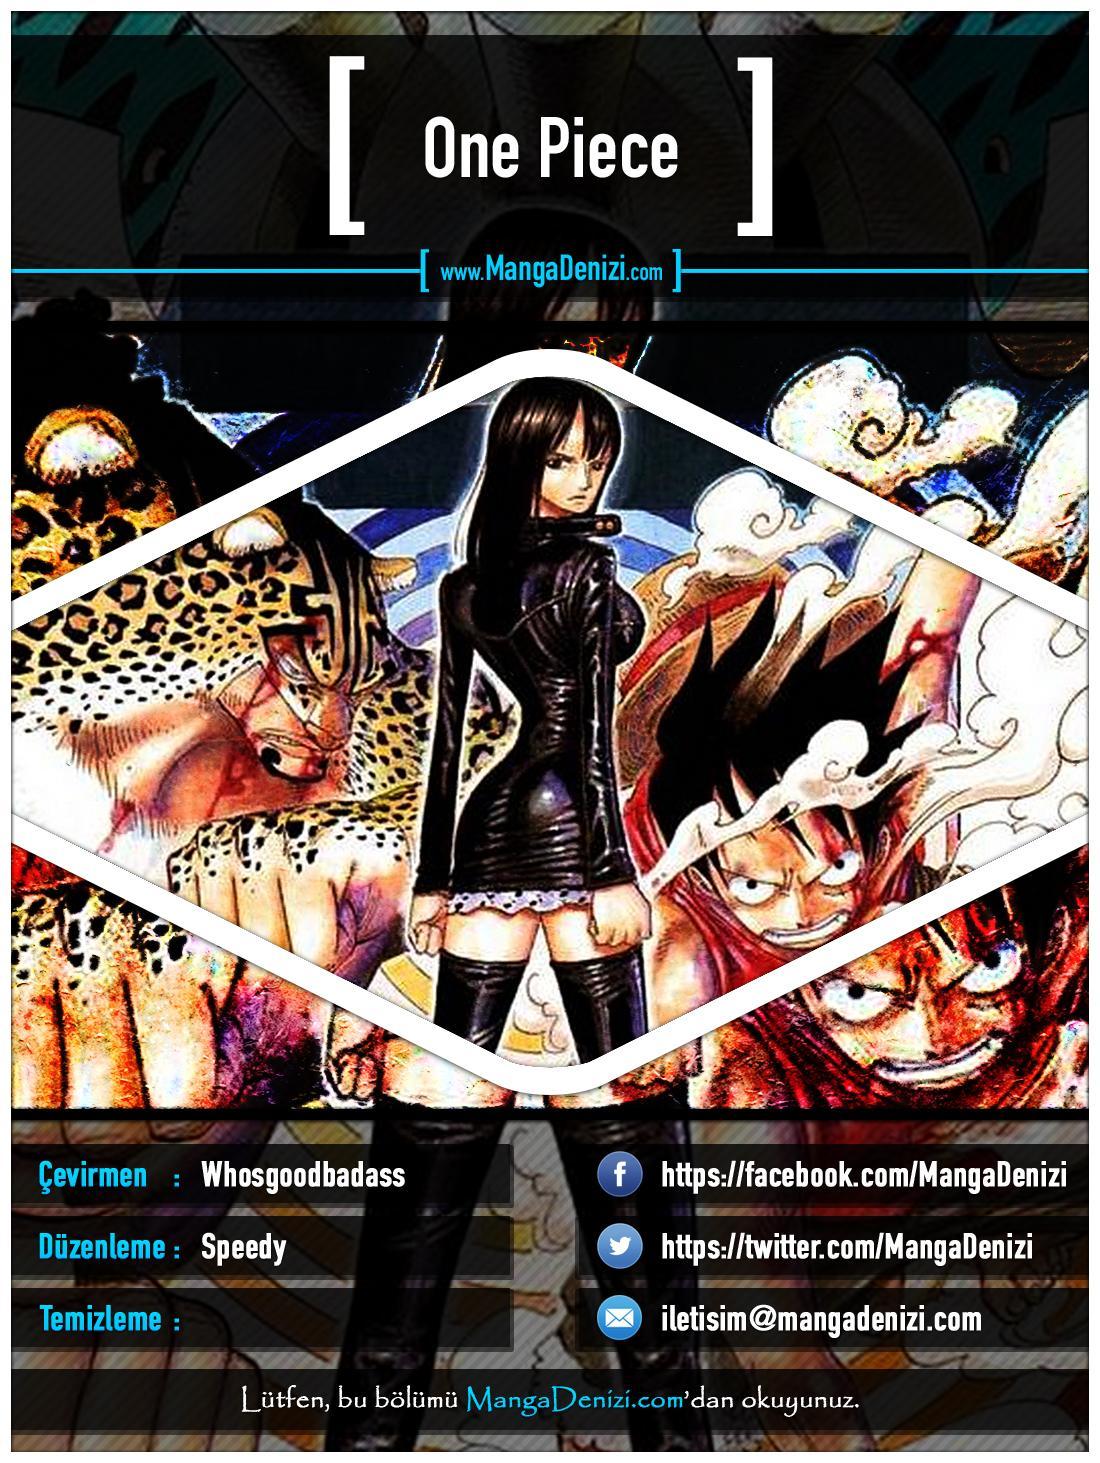 One Piece [Renkli] mangasının 0347 bölümünün 1. sayfasını okuyorsunuz.